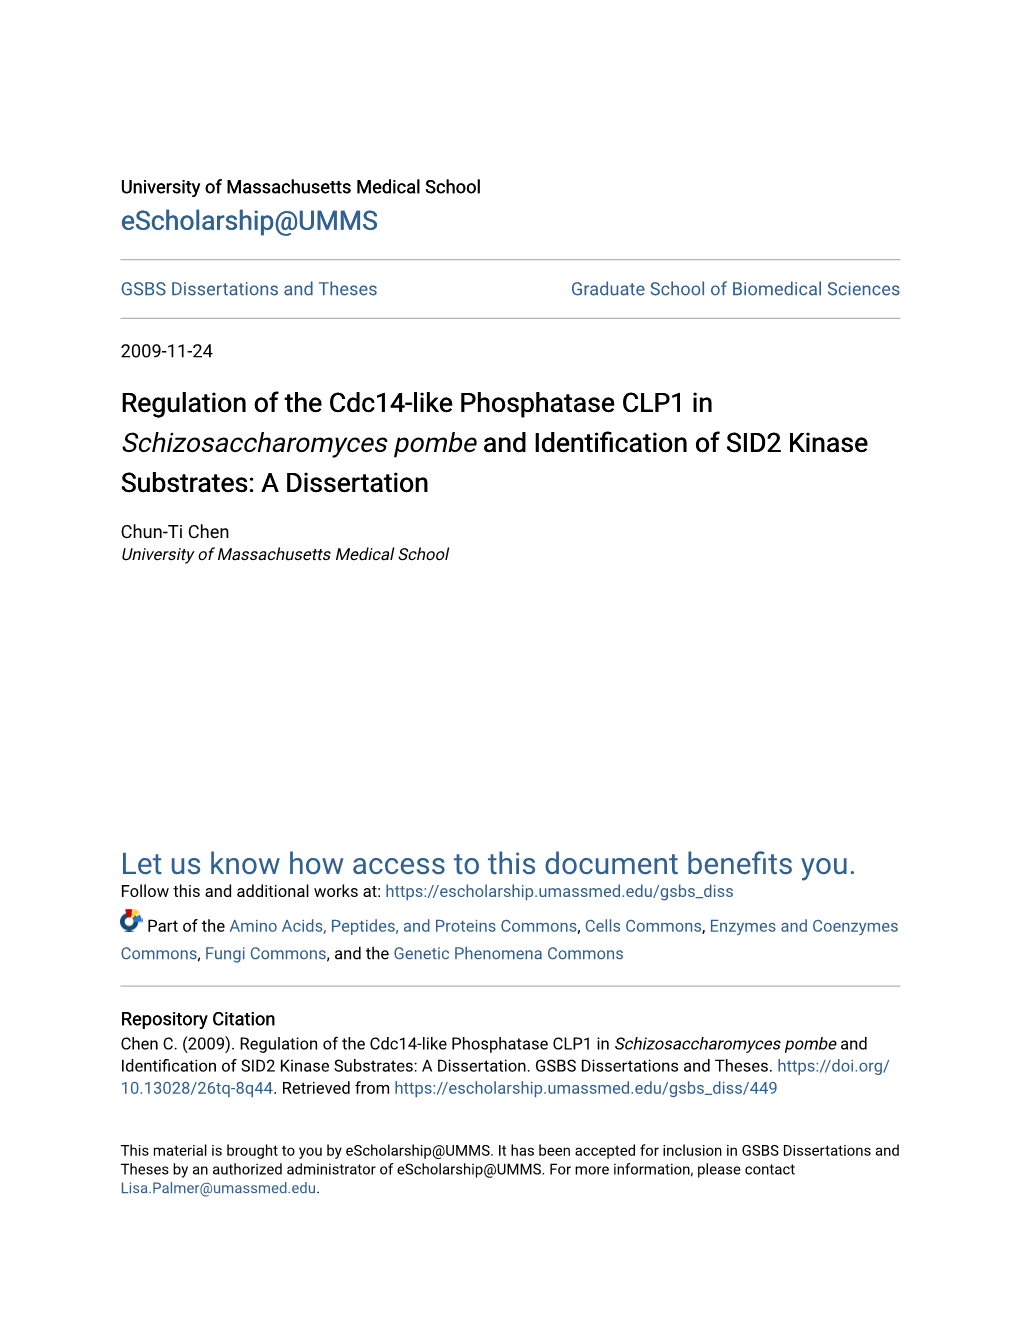 Regulation of the Cdc14-Like Phosphatase CLP1 in &lt;Em